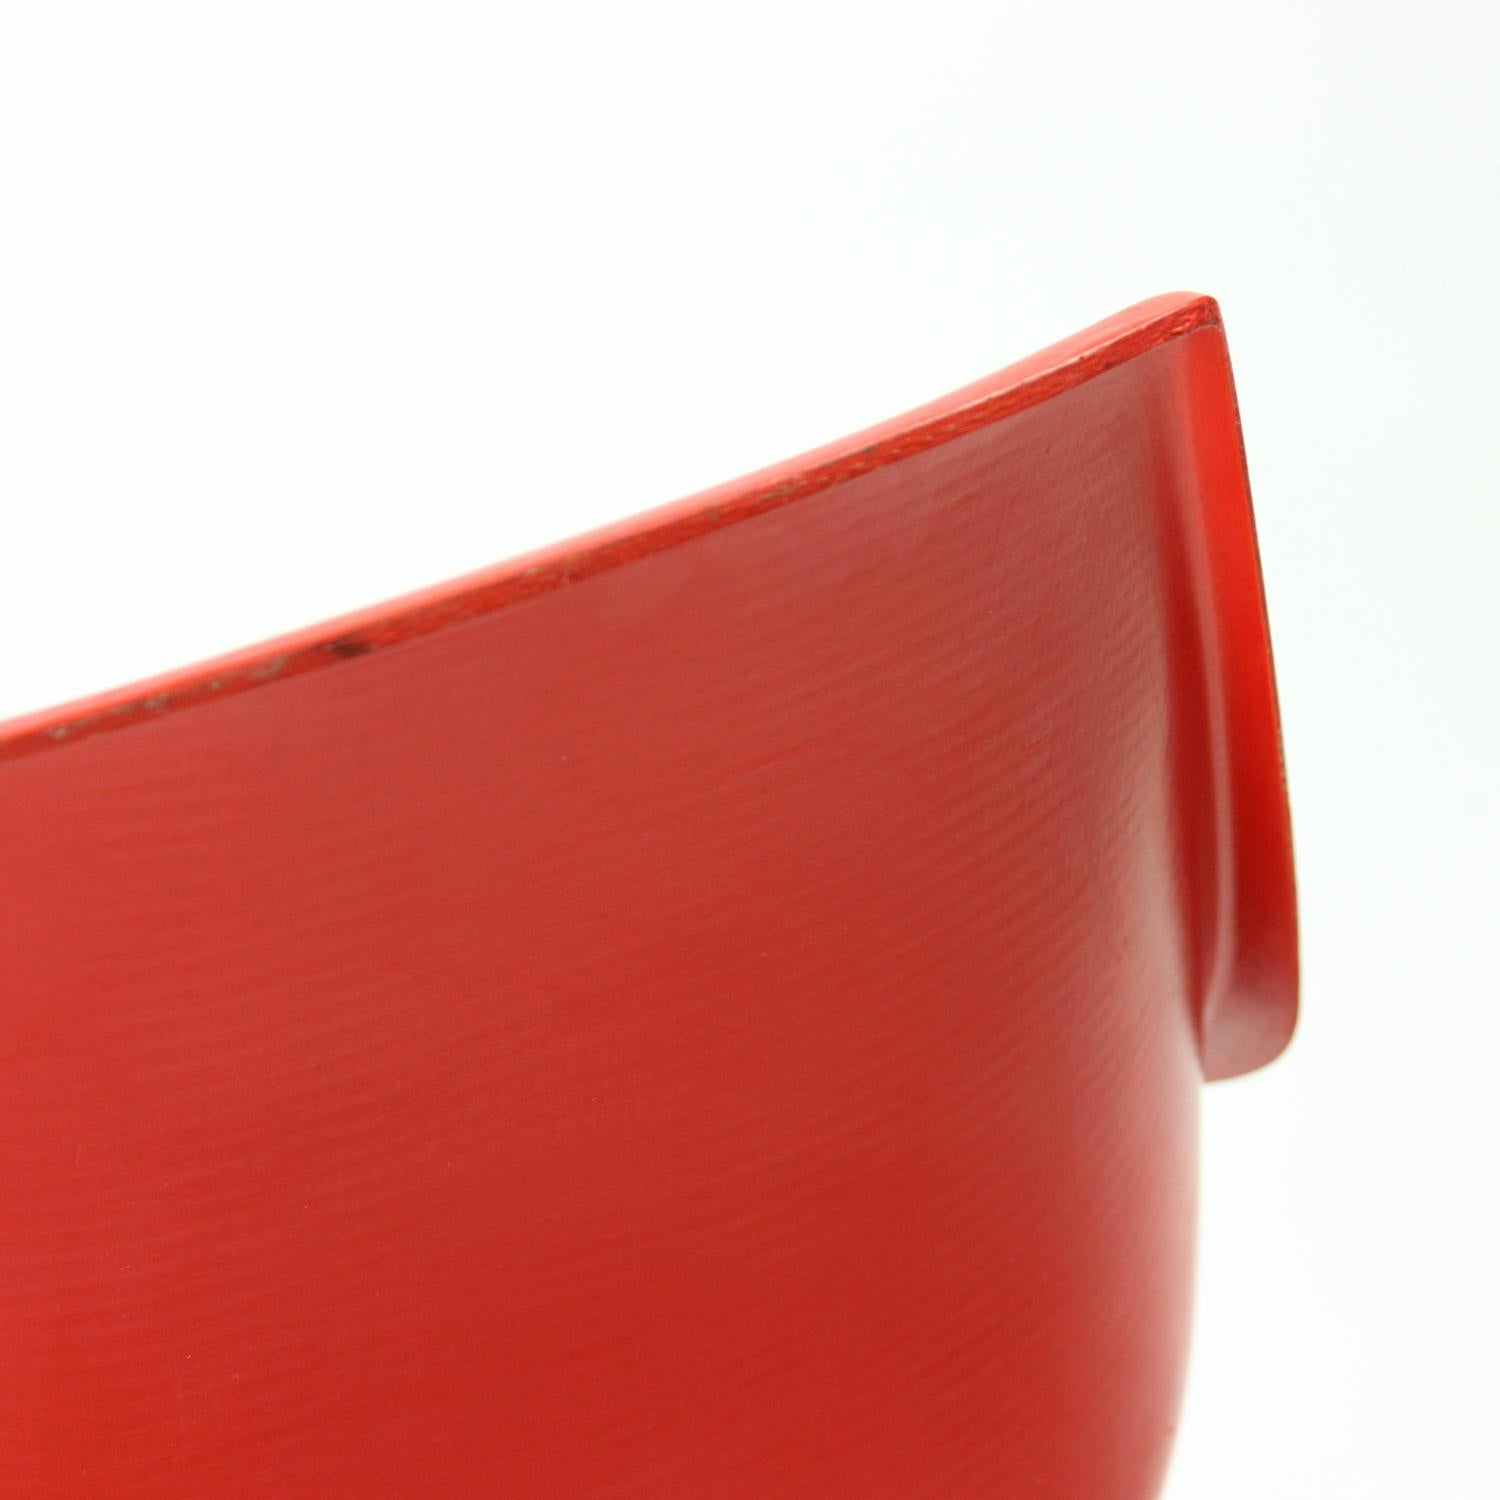 Red Tram Chair By Miroslav Navratil For Vertex, 1960s For Sale 2